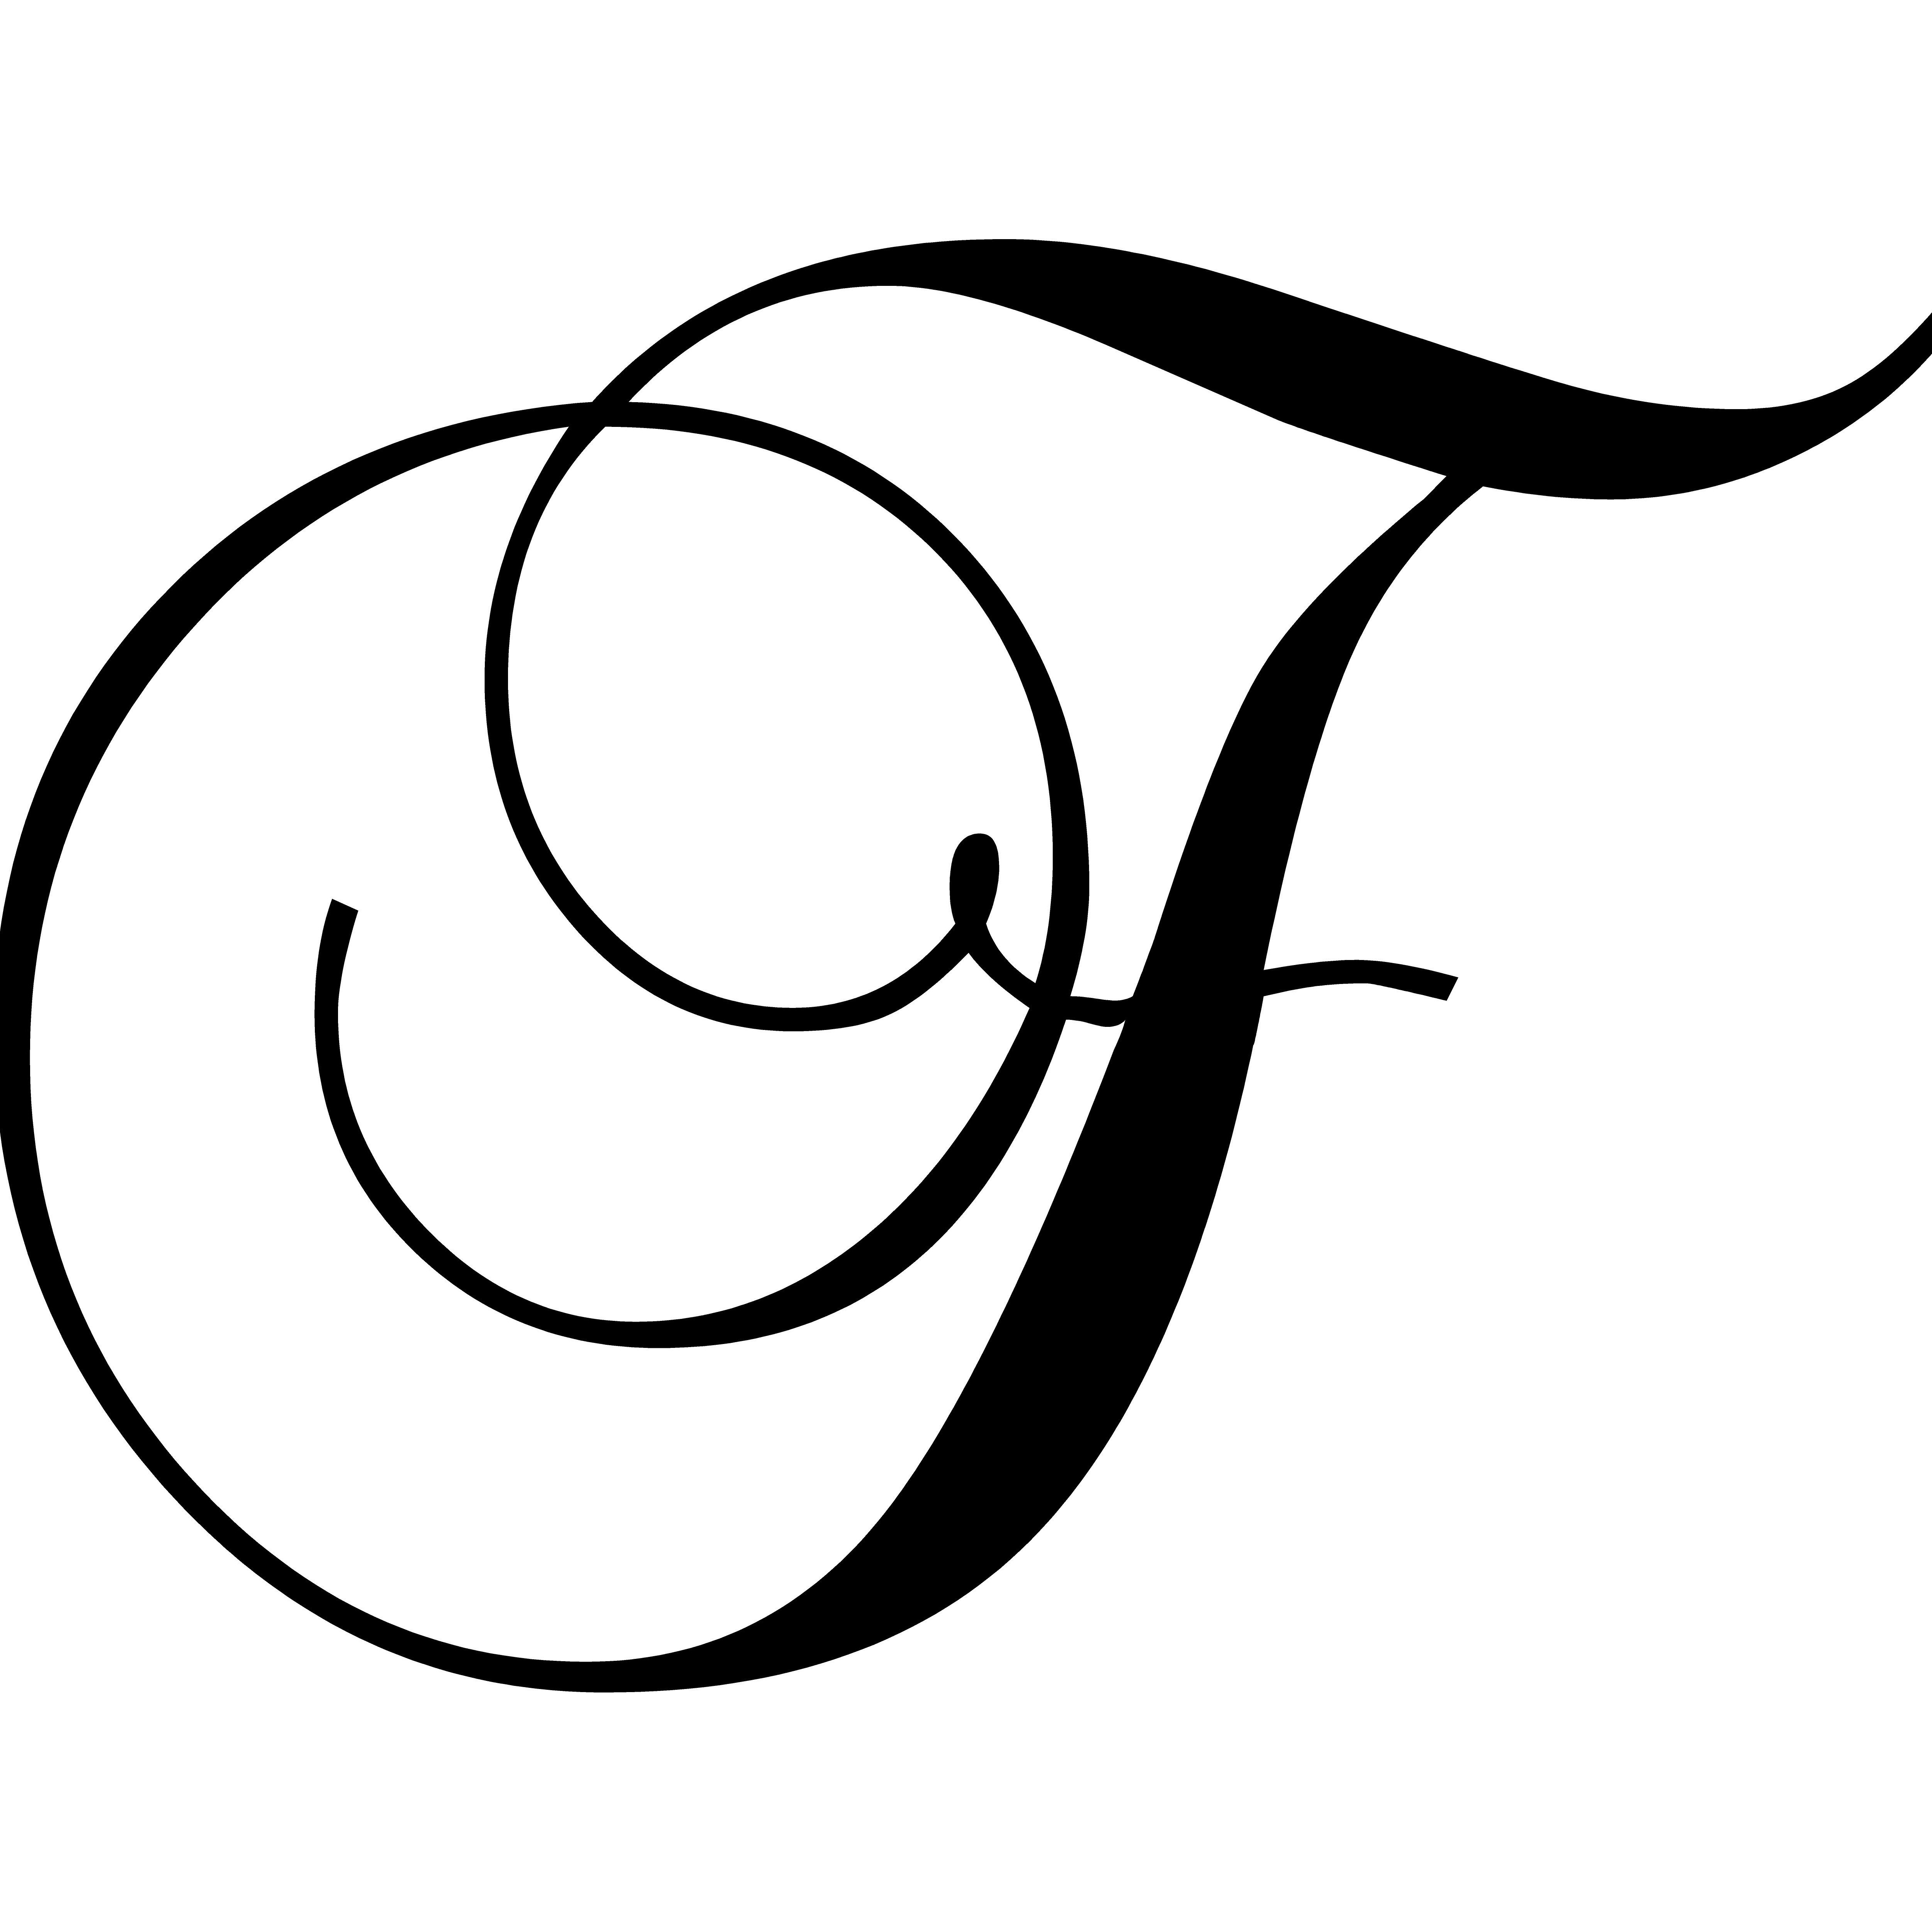 F script. Каллиграфическая буква г. Тату буква т. Красивая заглавная буква т. Красивая буква f.